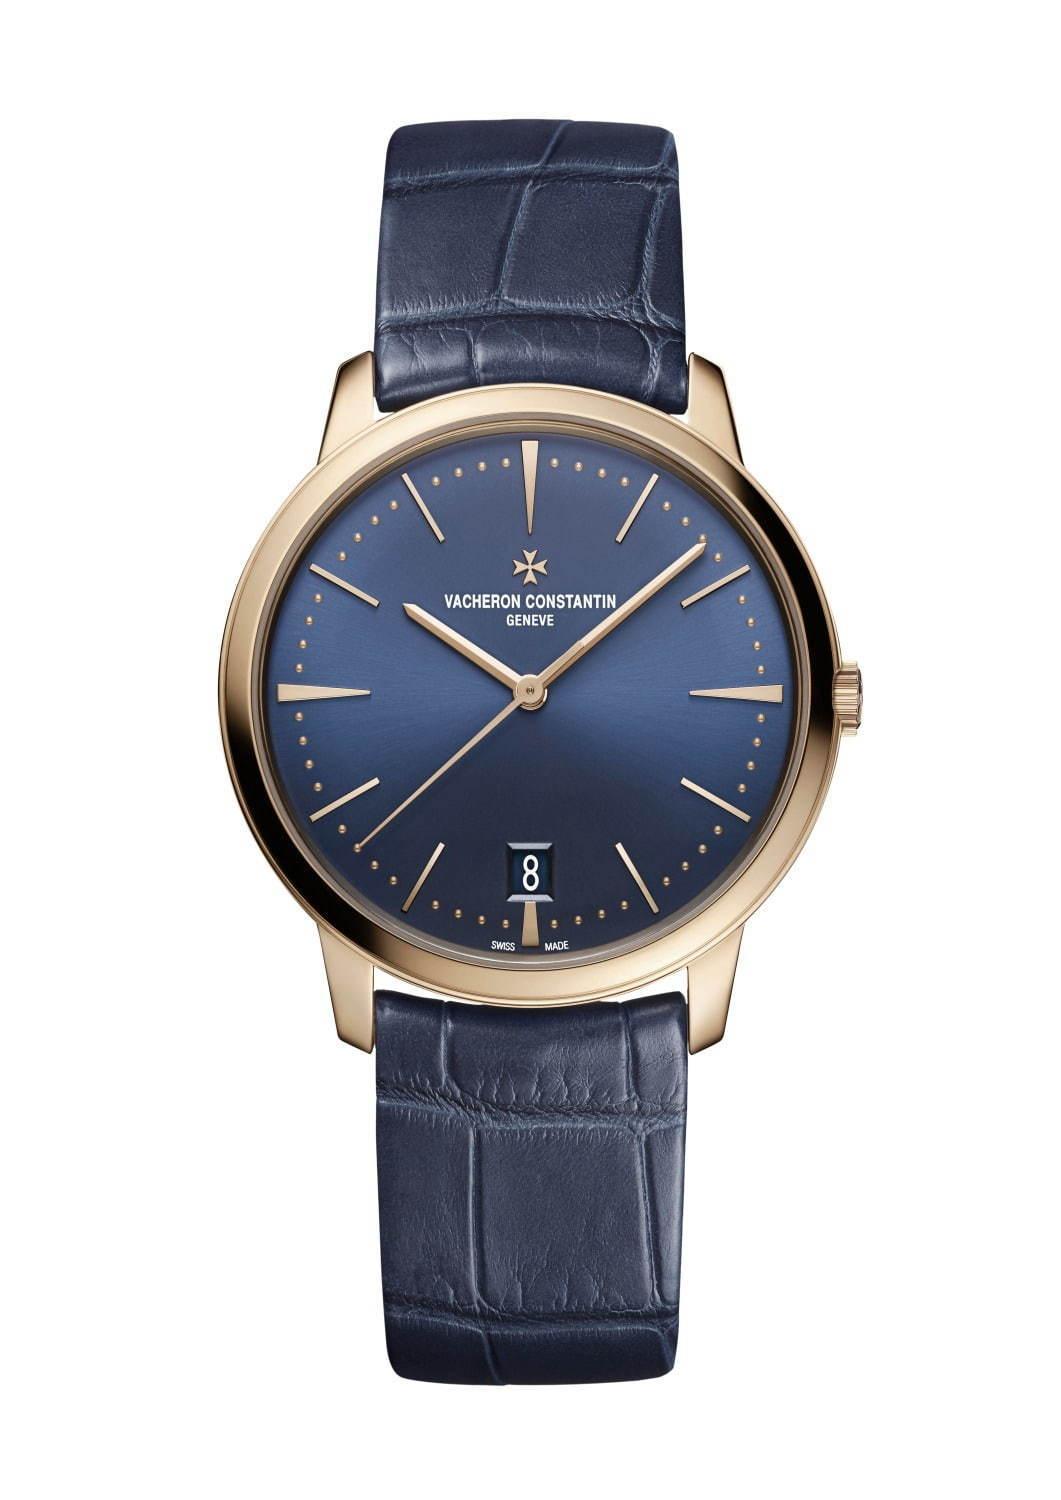 ヴァシュロン・コンスタンタンの腕時計「パトリモニー」新作ブルー×ピンクゴールド、ダイヤ付きモデルも コピー